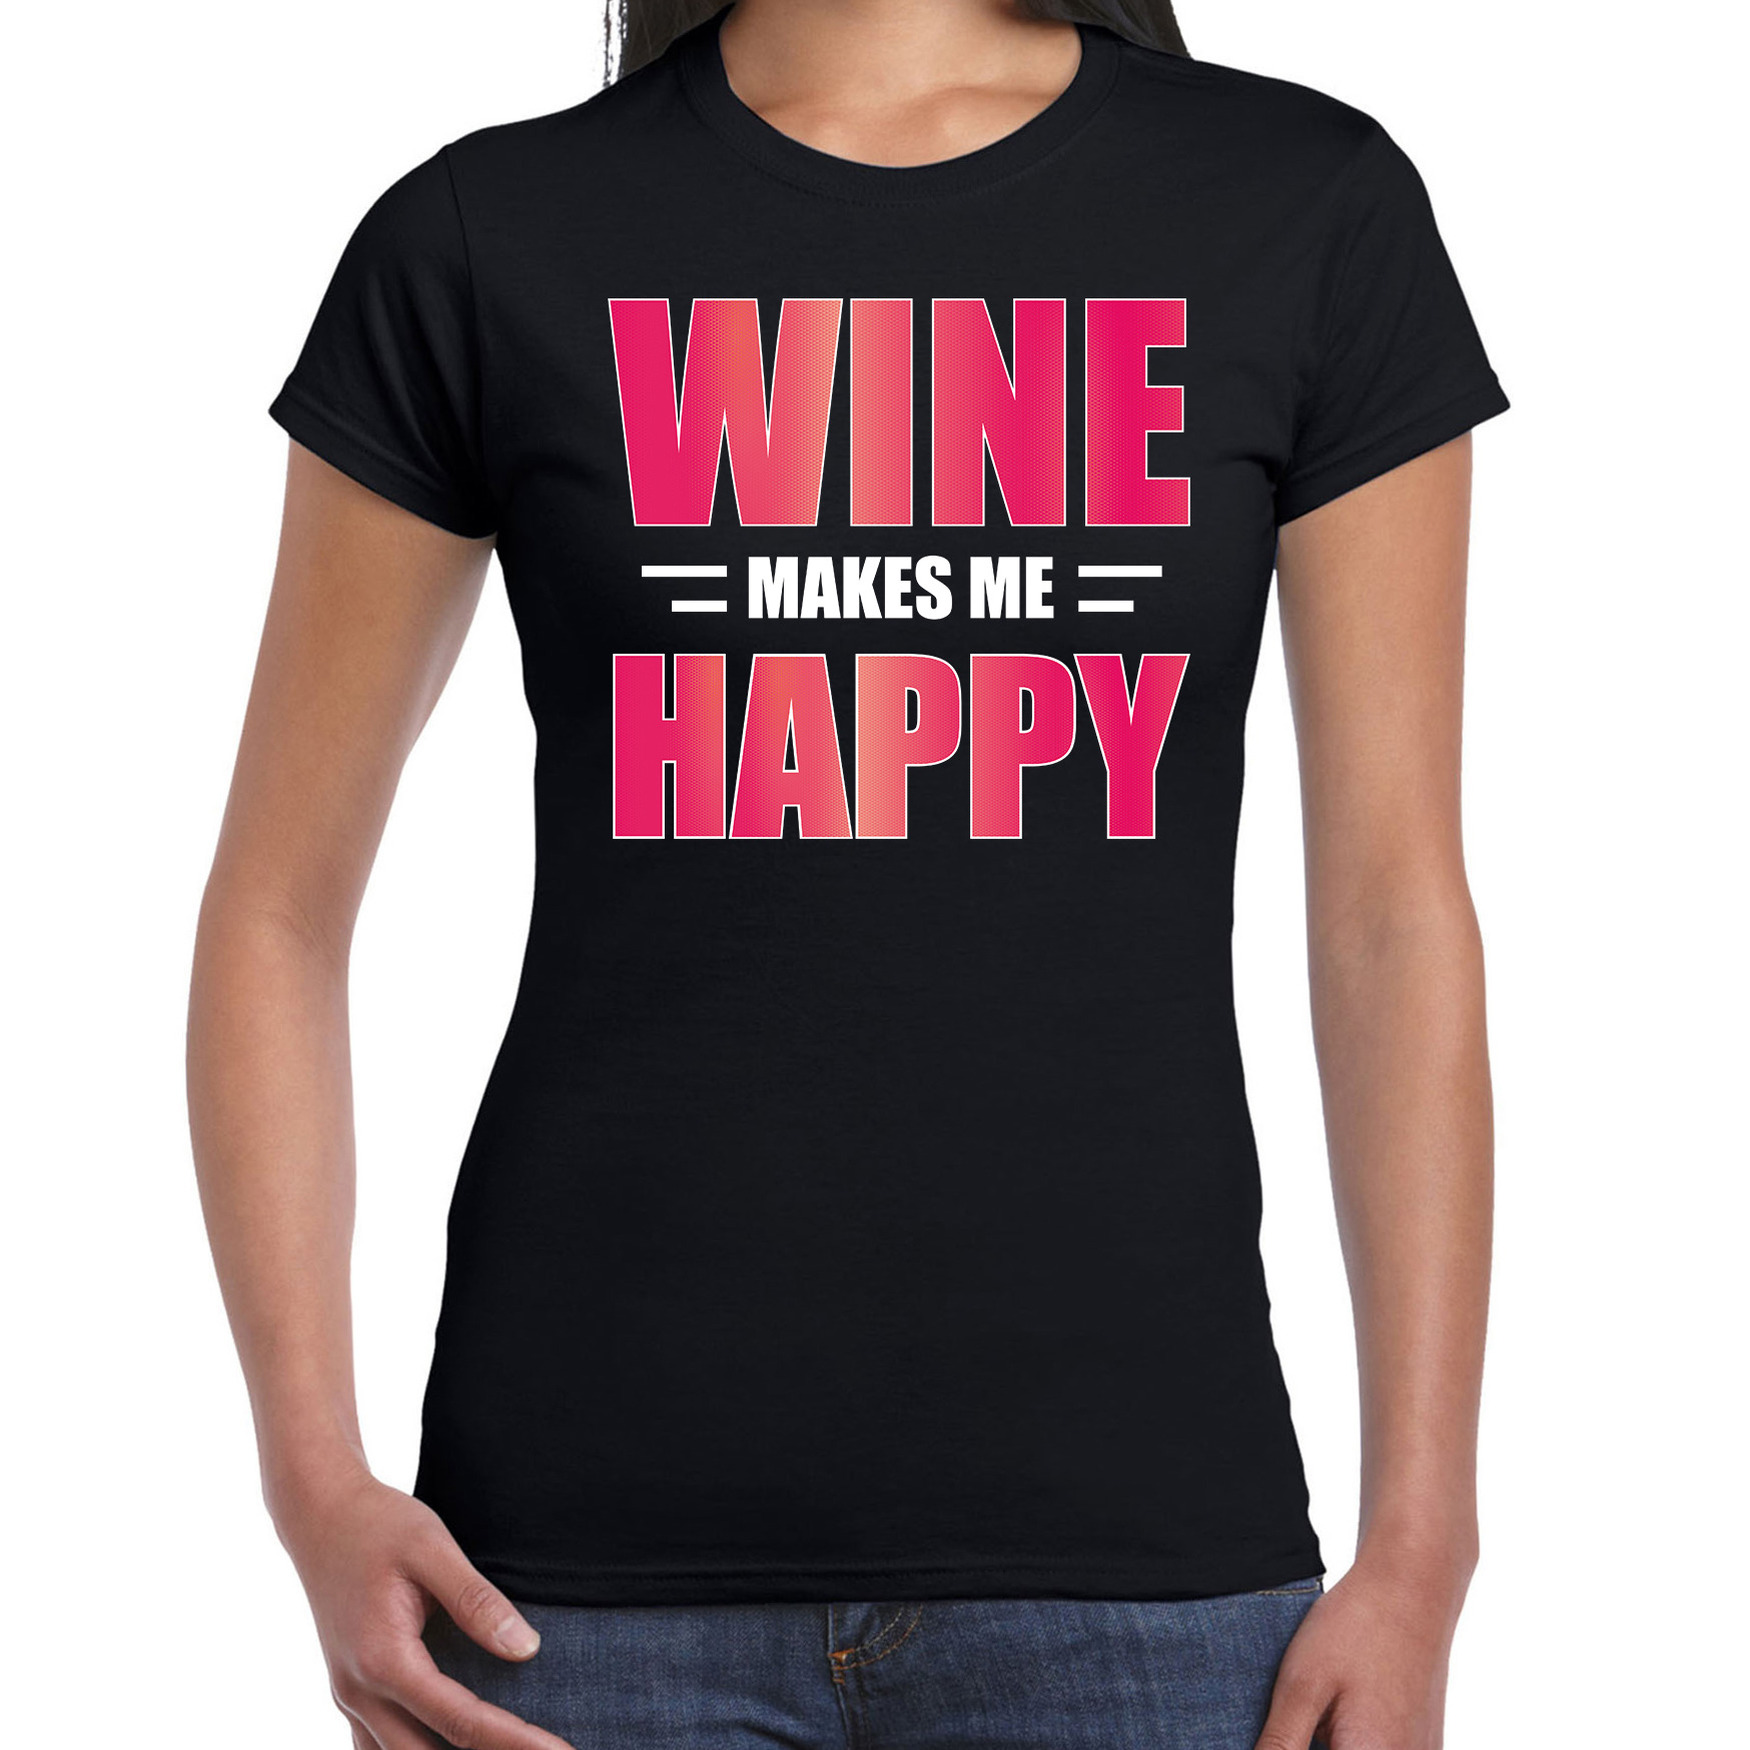 Wine makes me happy drank t-shirt-kleding zwart voor dames